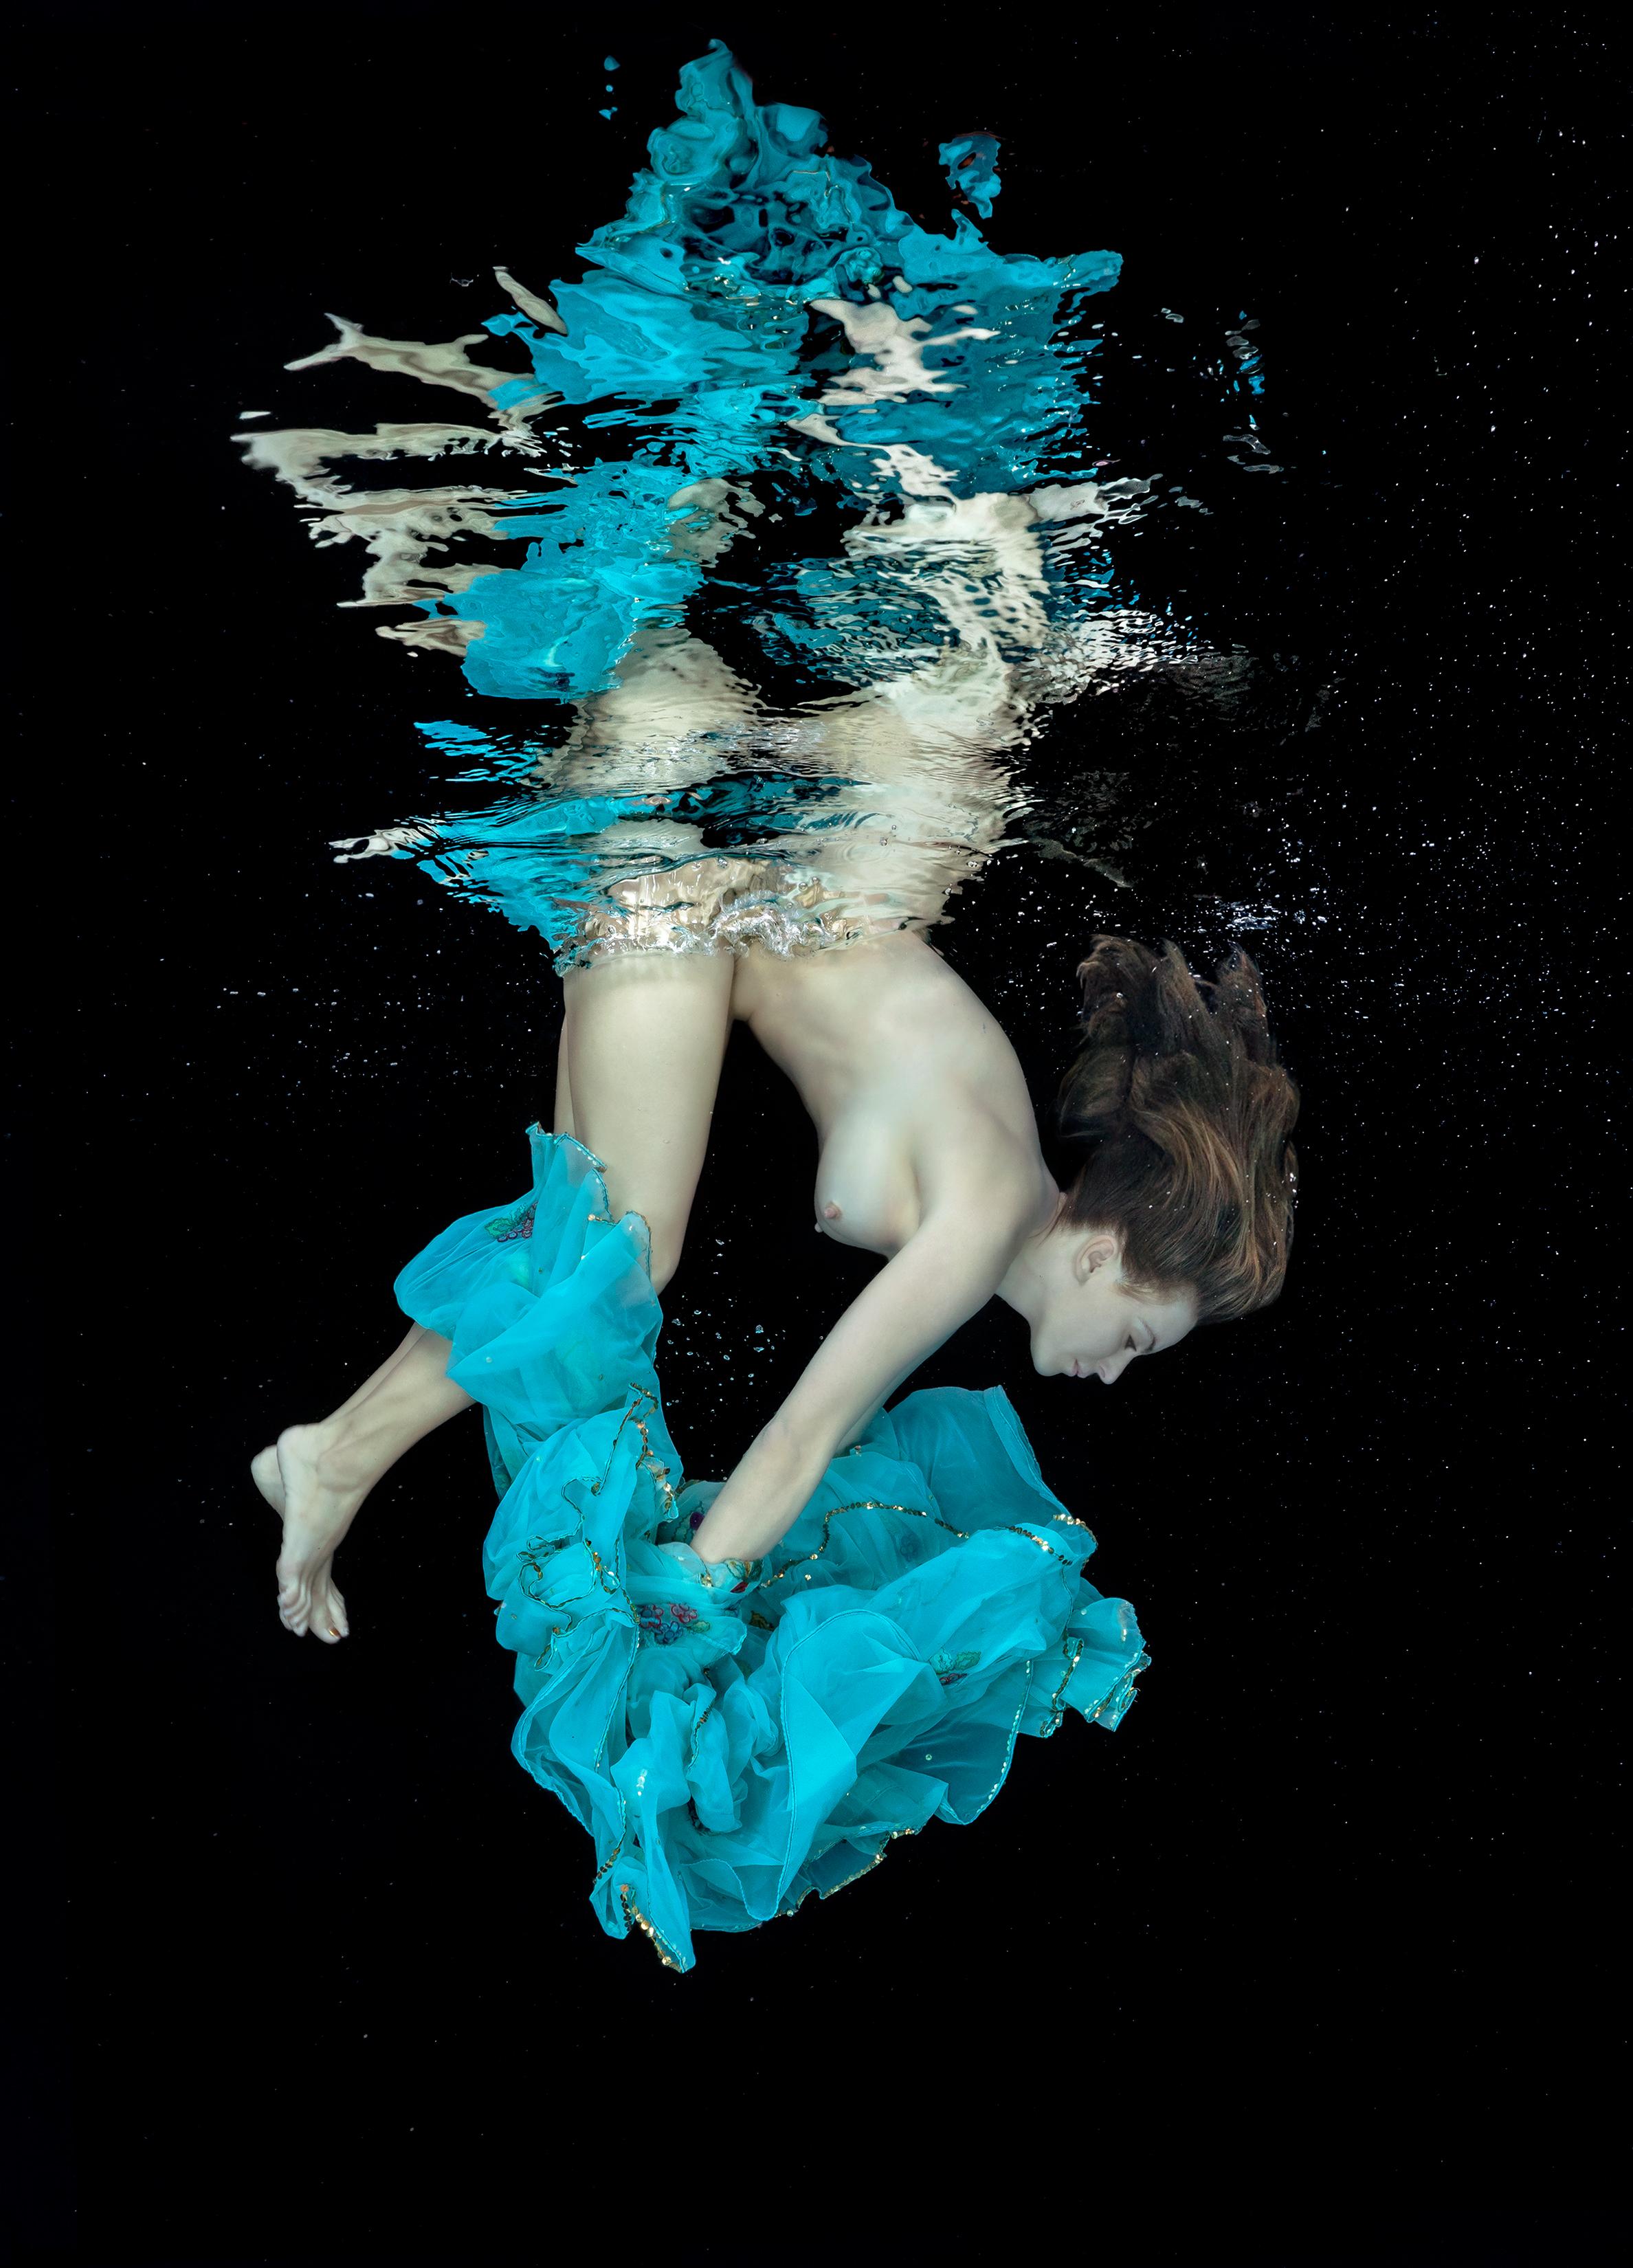 Porcelaine et Тurquoise - photographie de nu sous-marin - pigment d'archives 43x60"